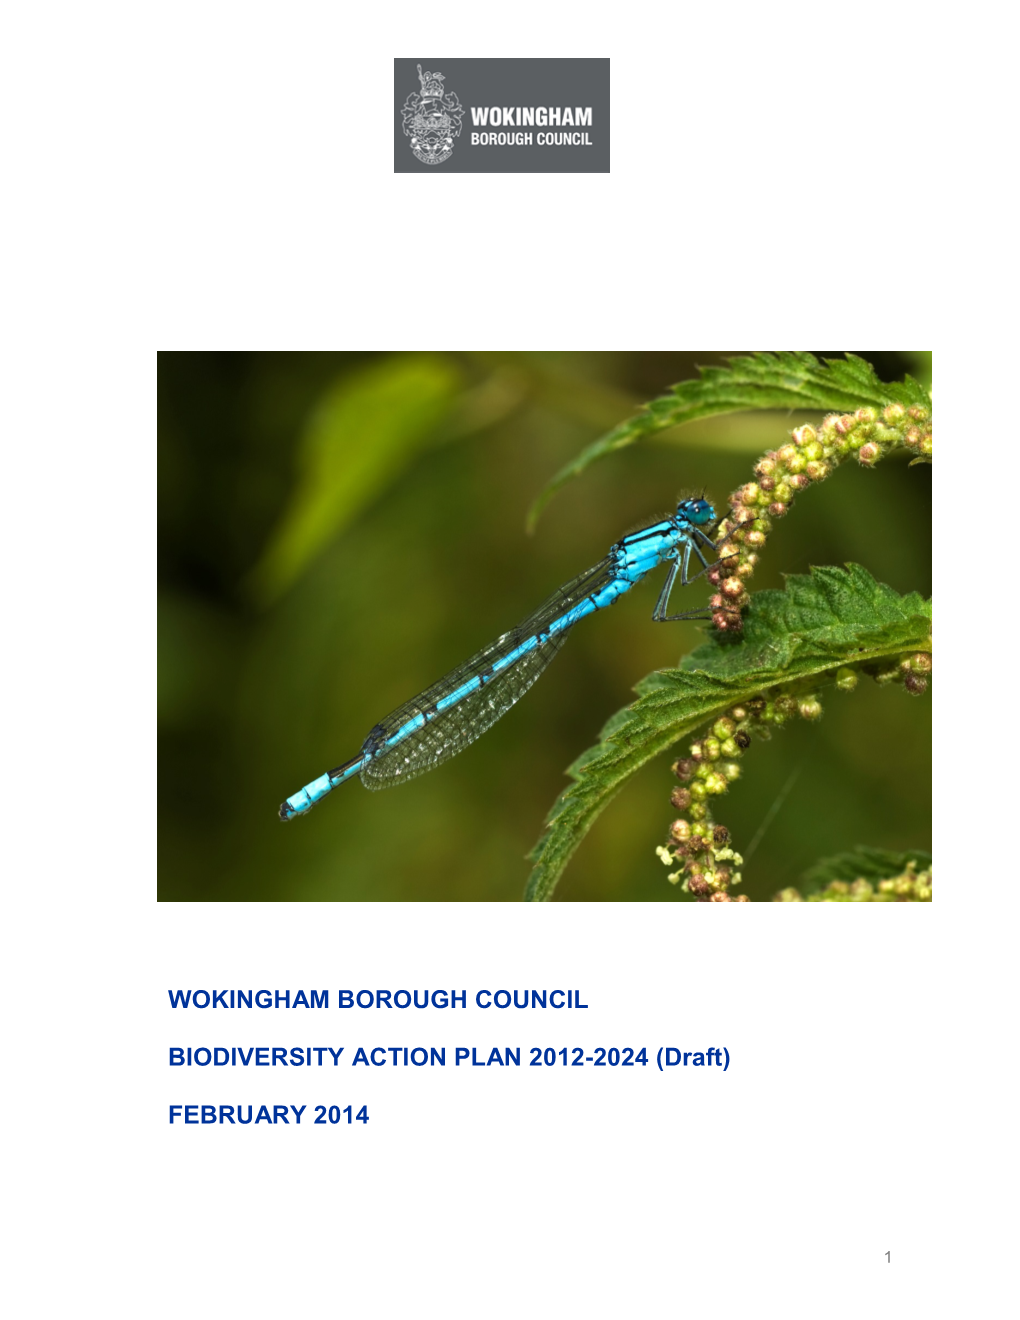 Wokingham Borough Council Biodiversity Action Plan